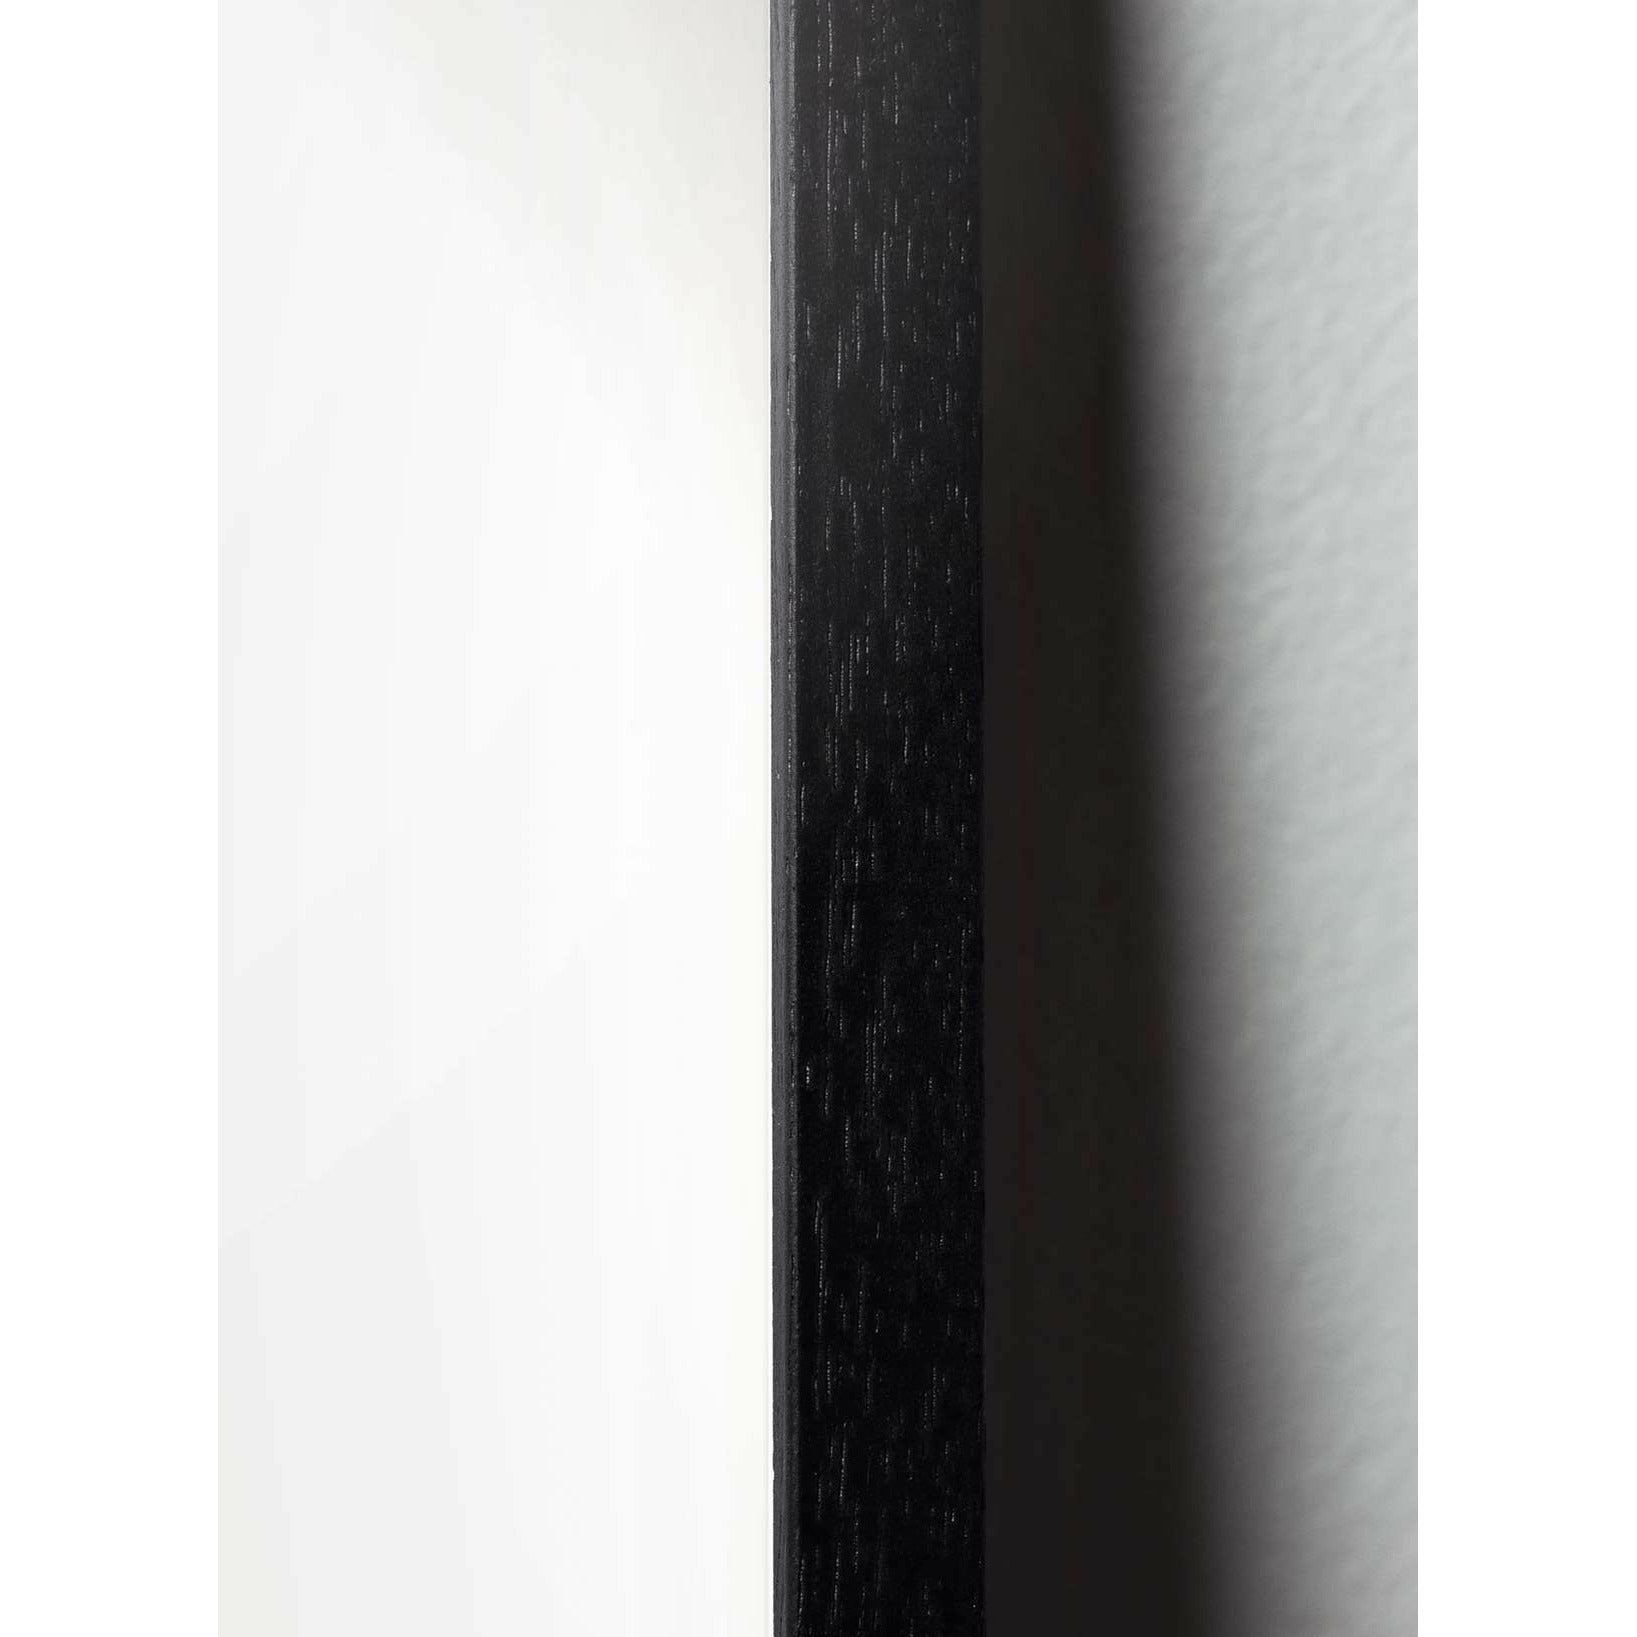 Pomysły plakat linii mrówek, rama w czarnym lakierowanym drewnie 50x70 cm, niebieskie tło